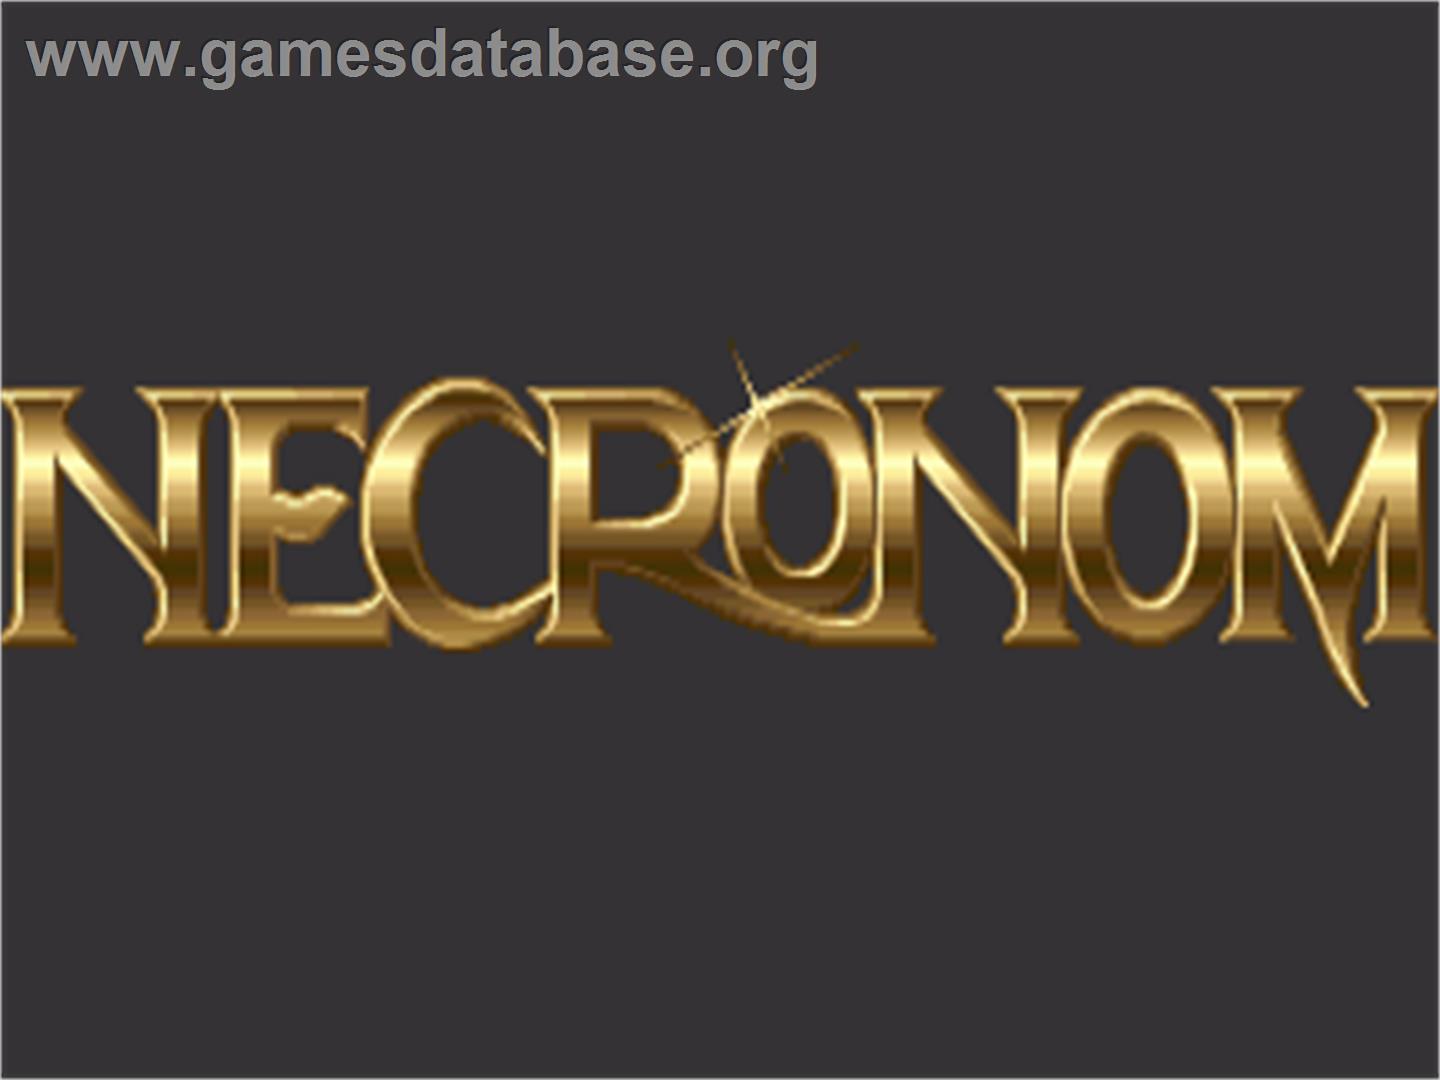 Necronom - Commodore Amiga - Artwork - Title Screen